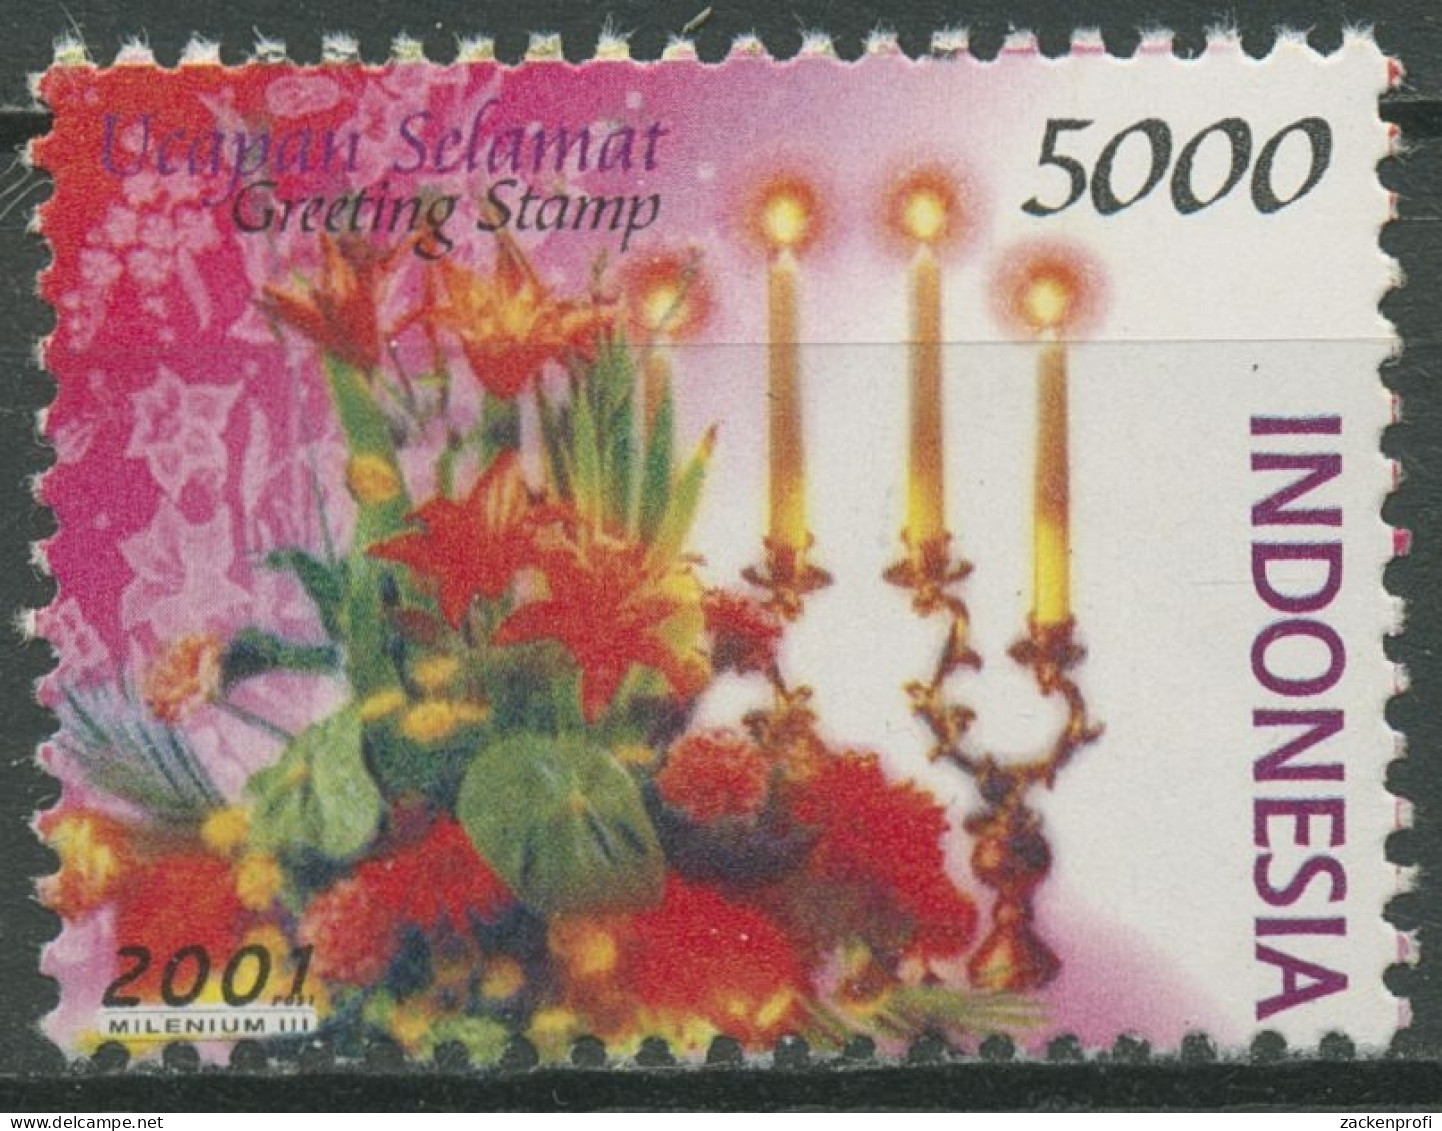 Indonesien 2001 Grußmarken Blumen Blumenbouquet Mit Kerzen 2107 Postfrisch - Indonesien